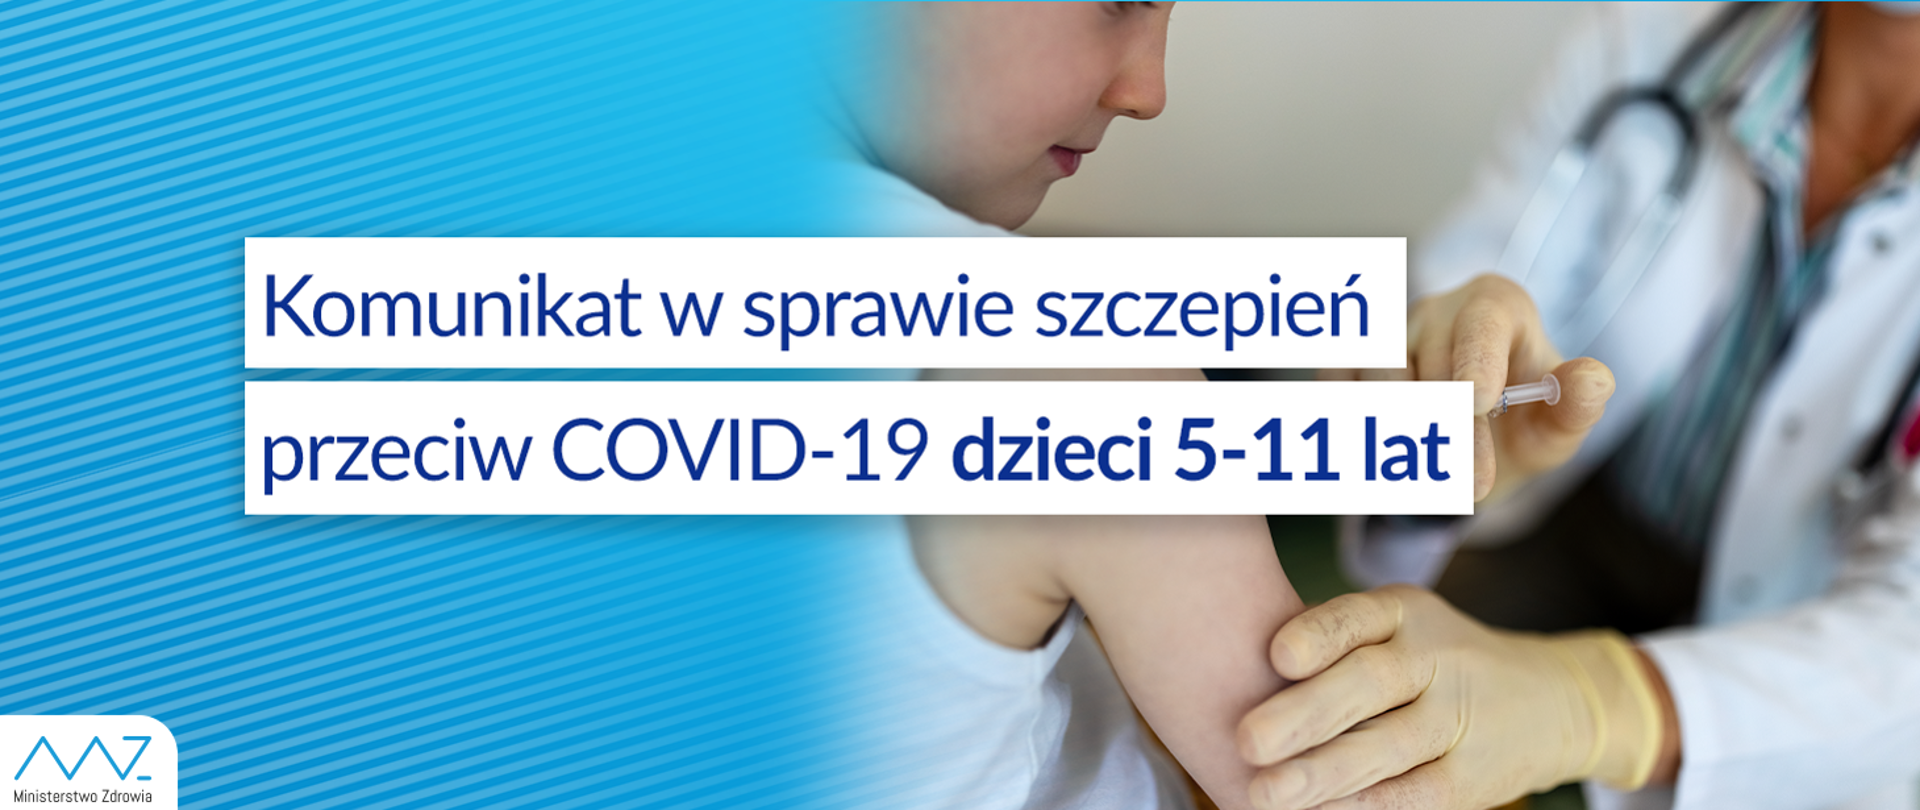 Szczepienia dla dzieci COVID-19